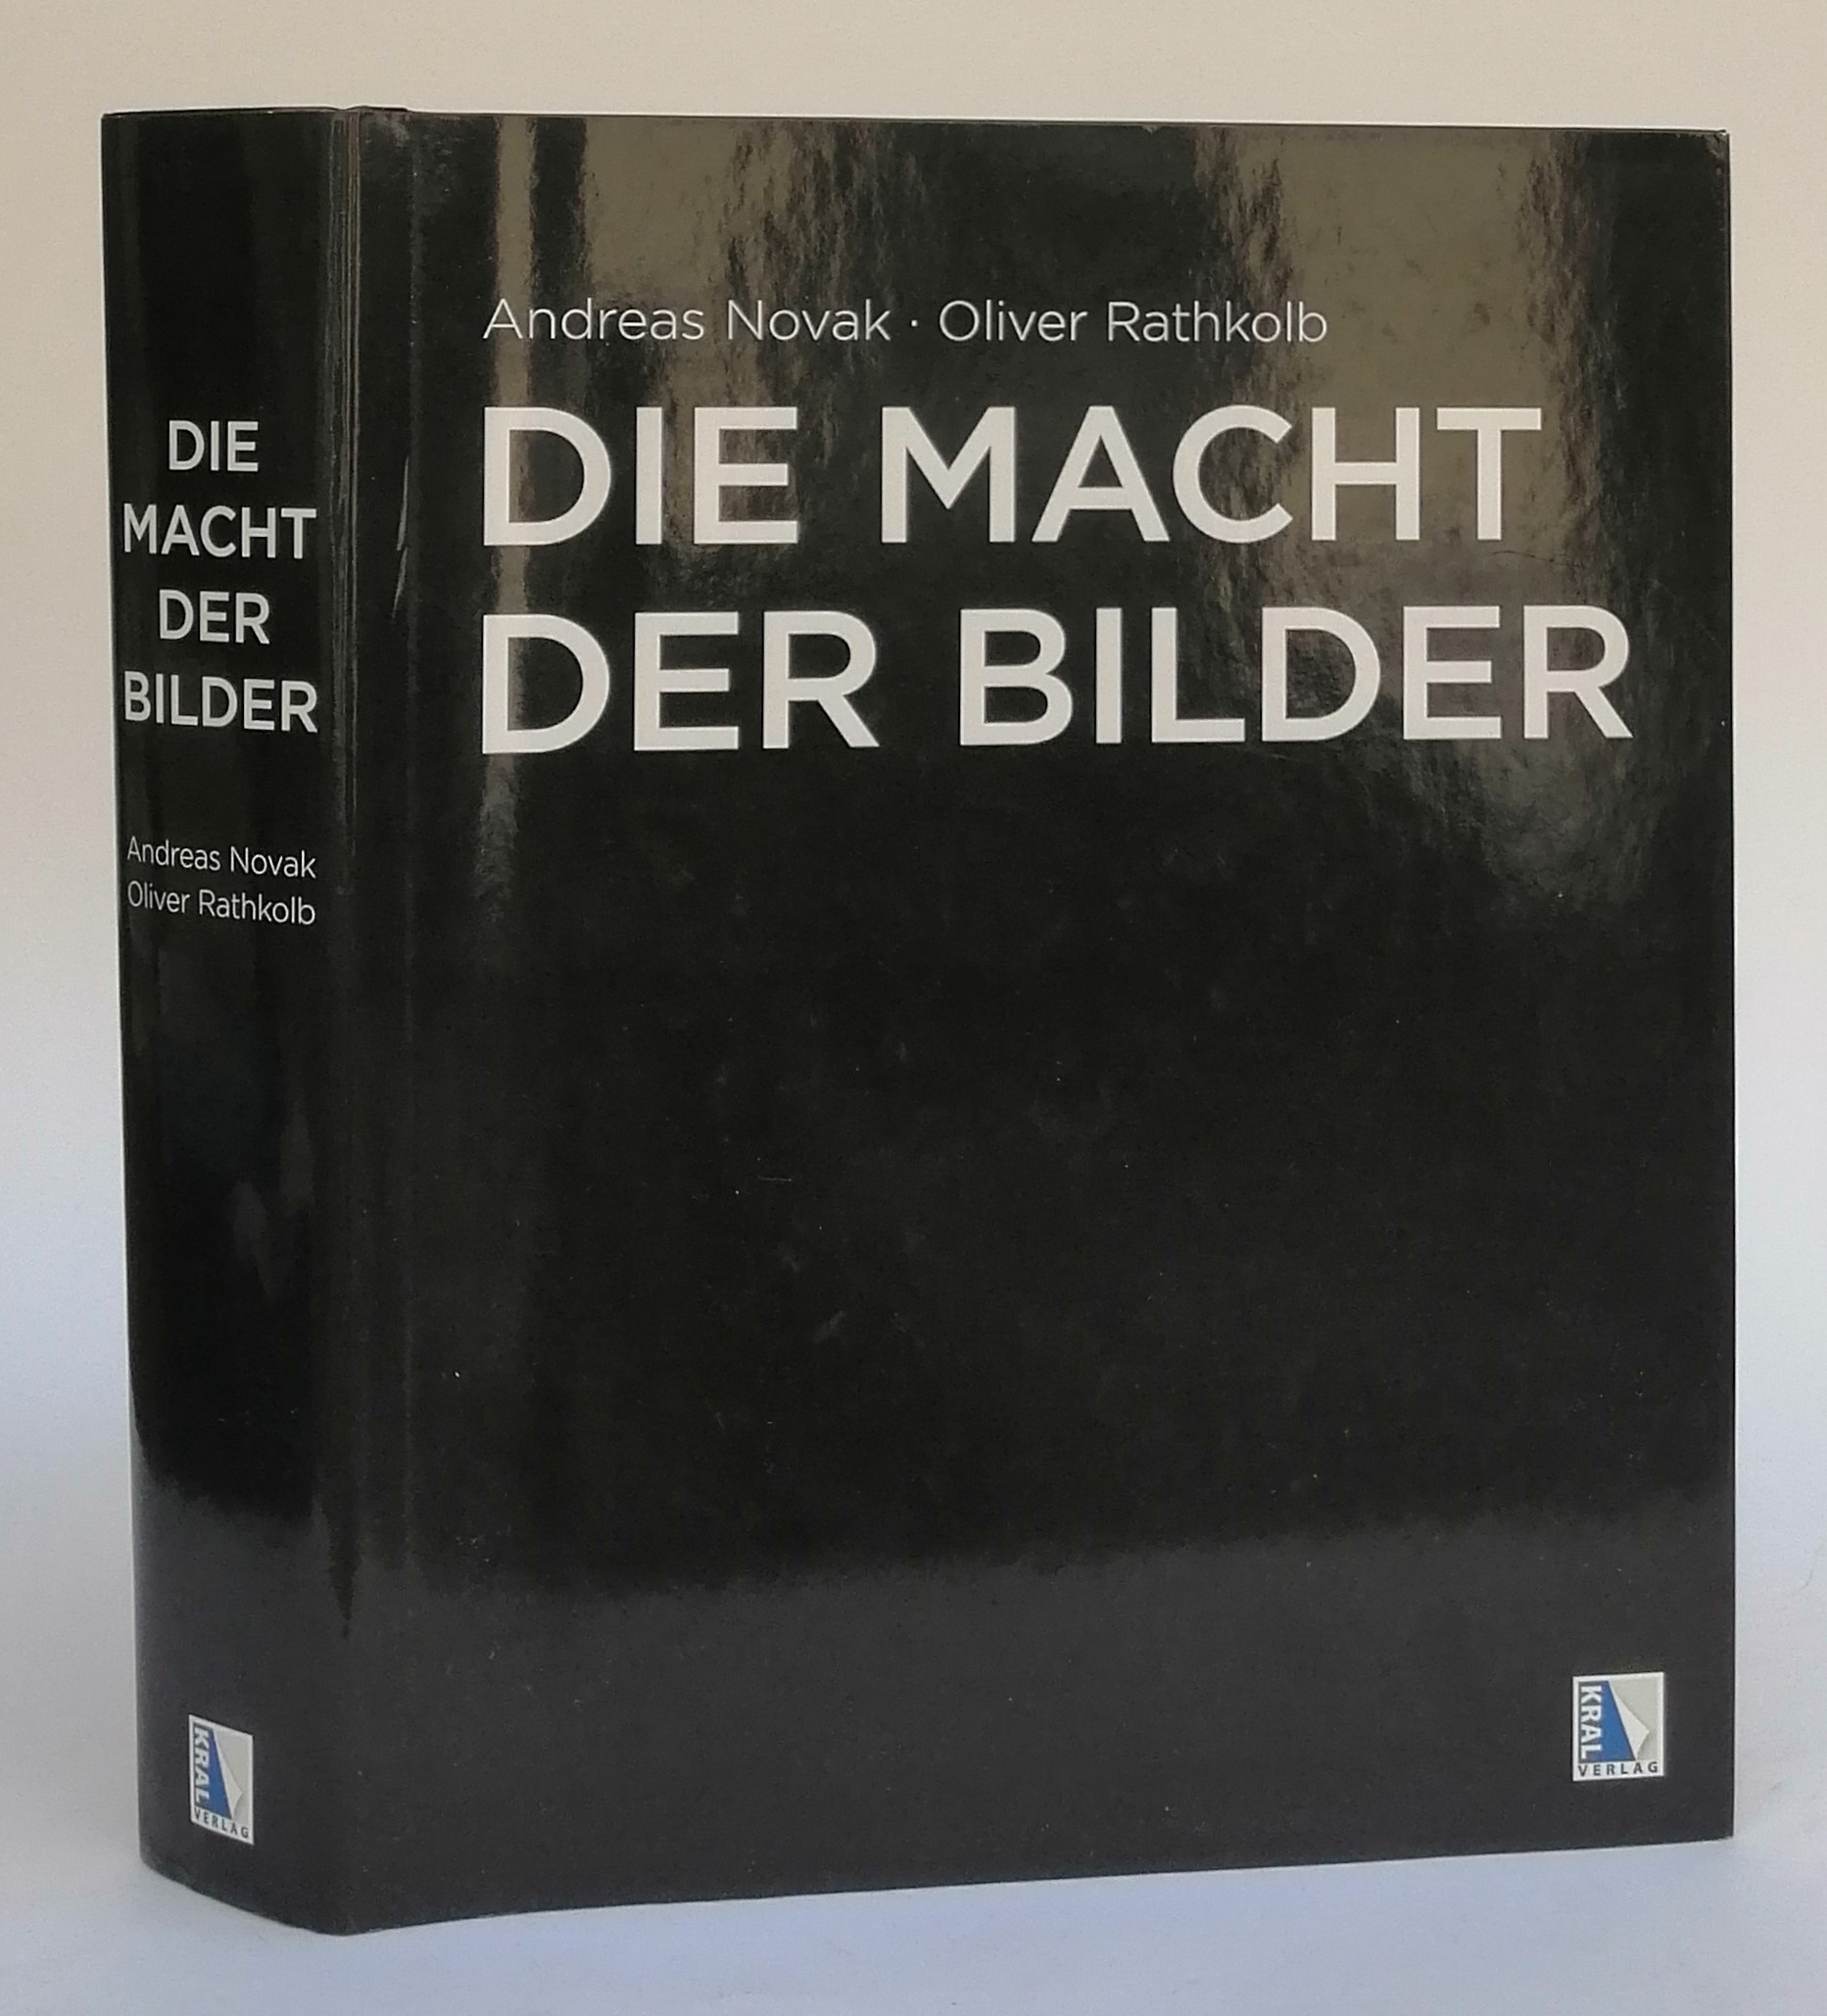 Die Macht der Bilder. 50 Jahre Rundfunkreform - Novak, Andreas / Rathkolb, Oliver (Hg.)